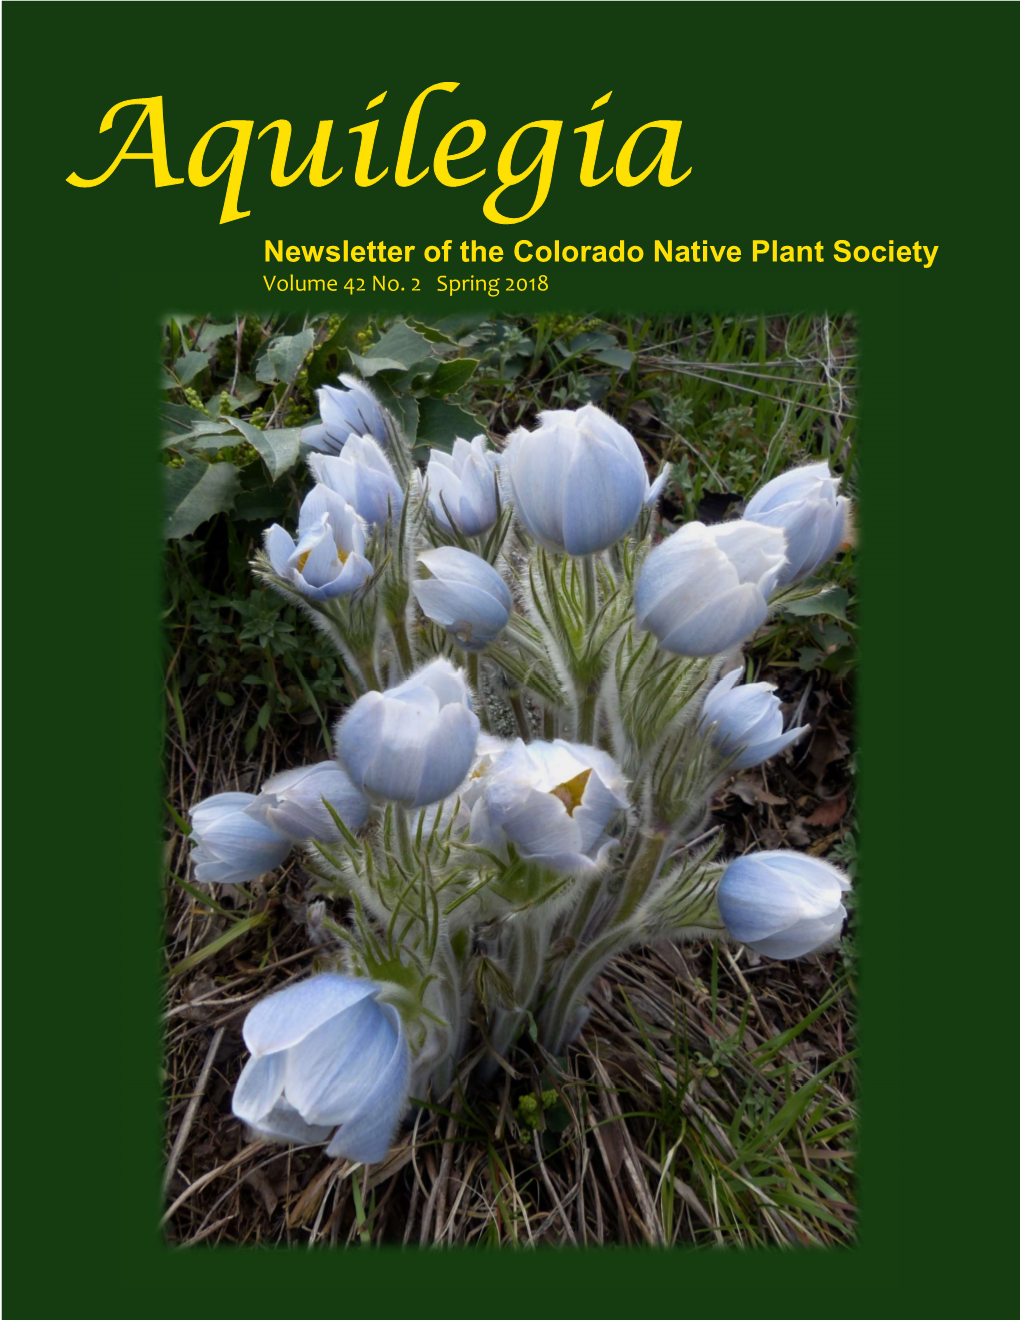 Aquilegia Volume 42 No. 2 Spring 2018